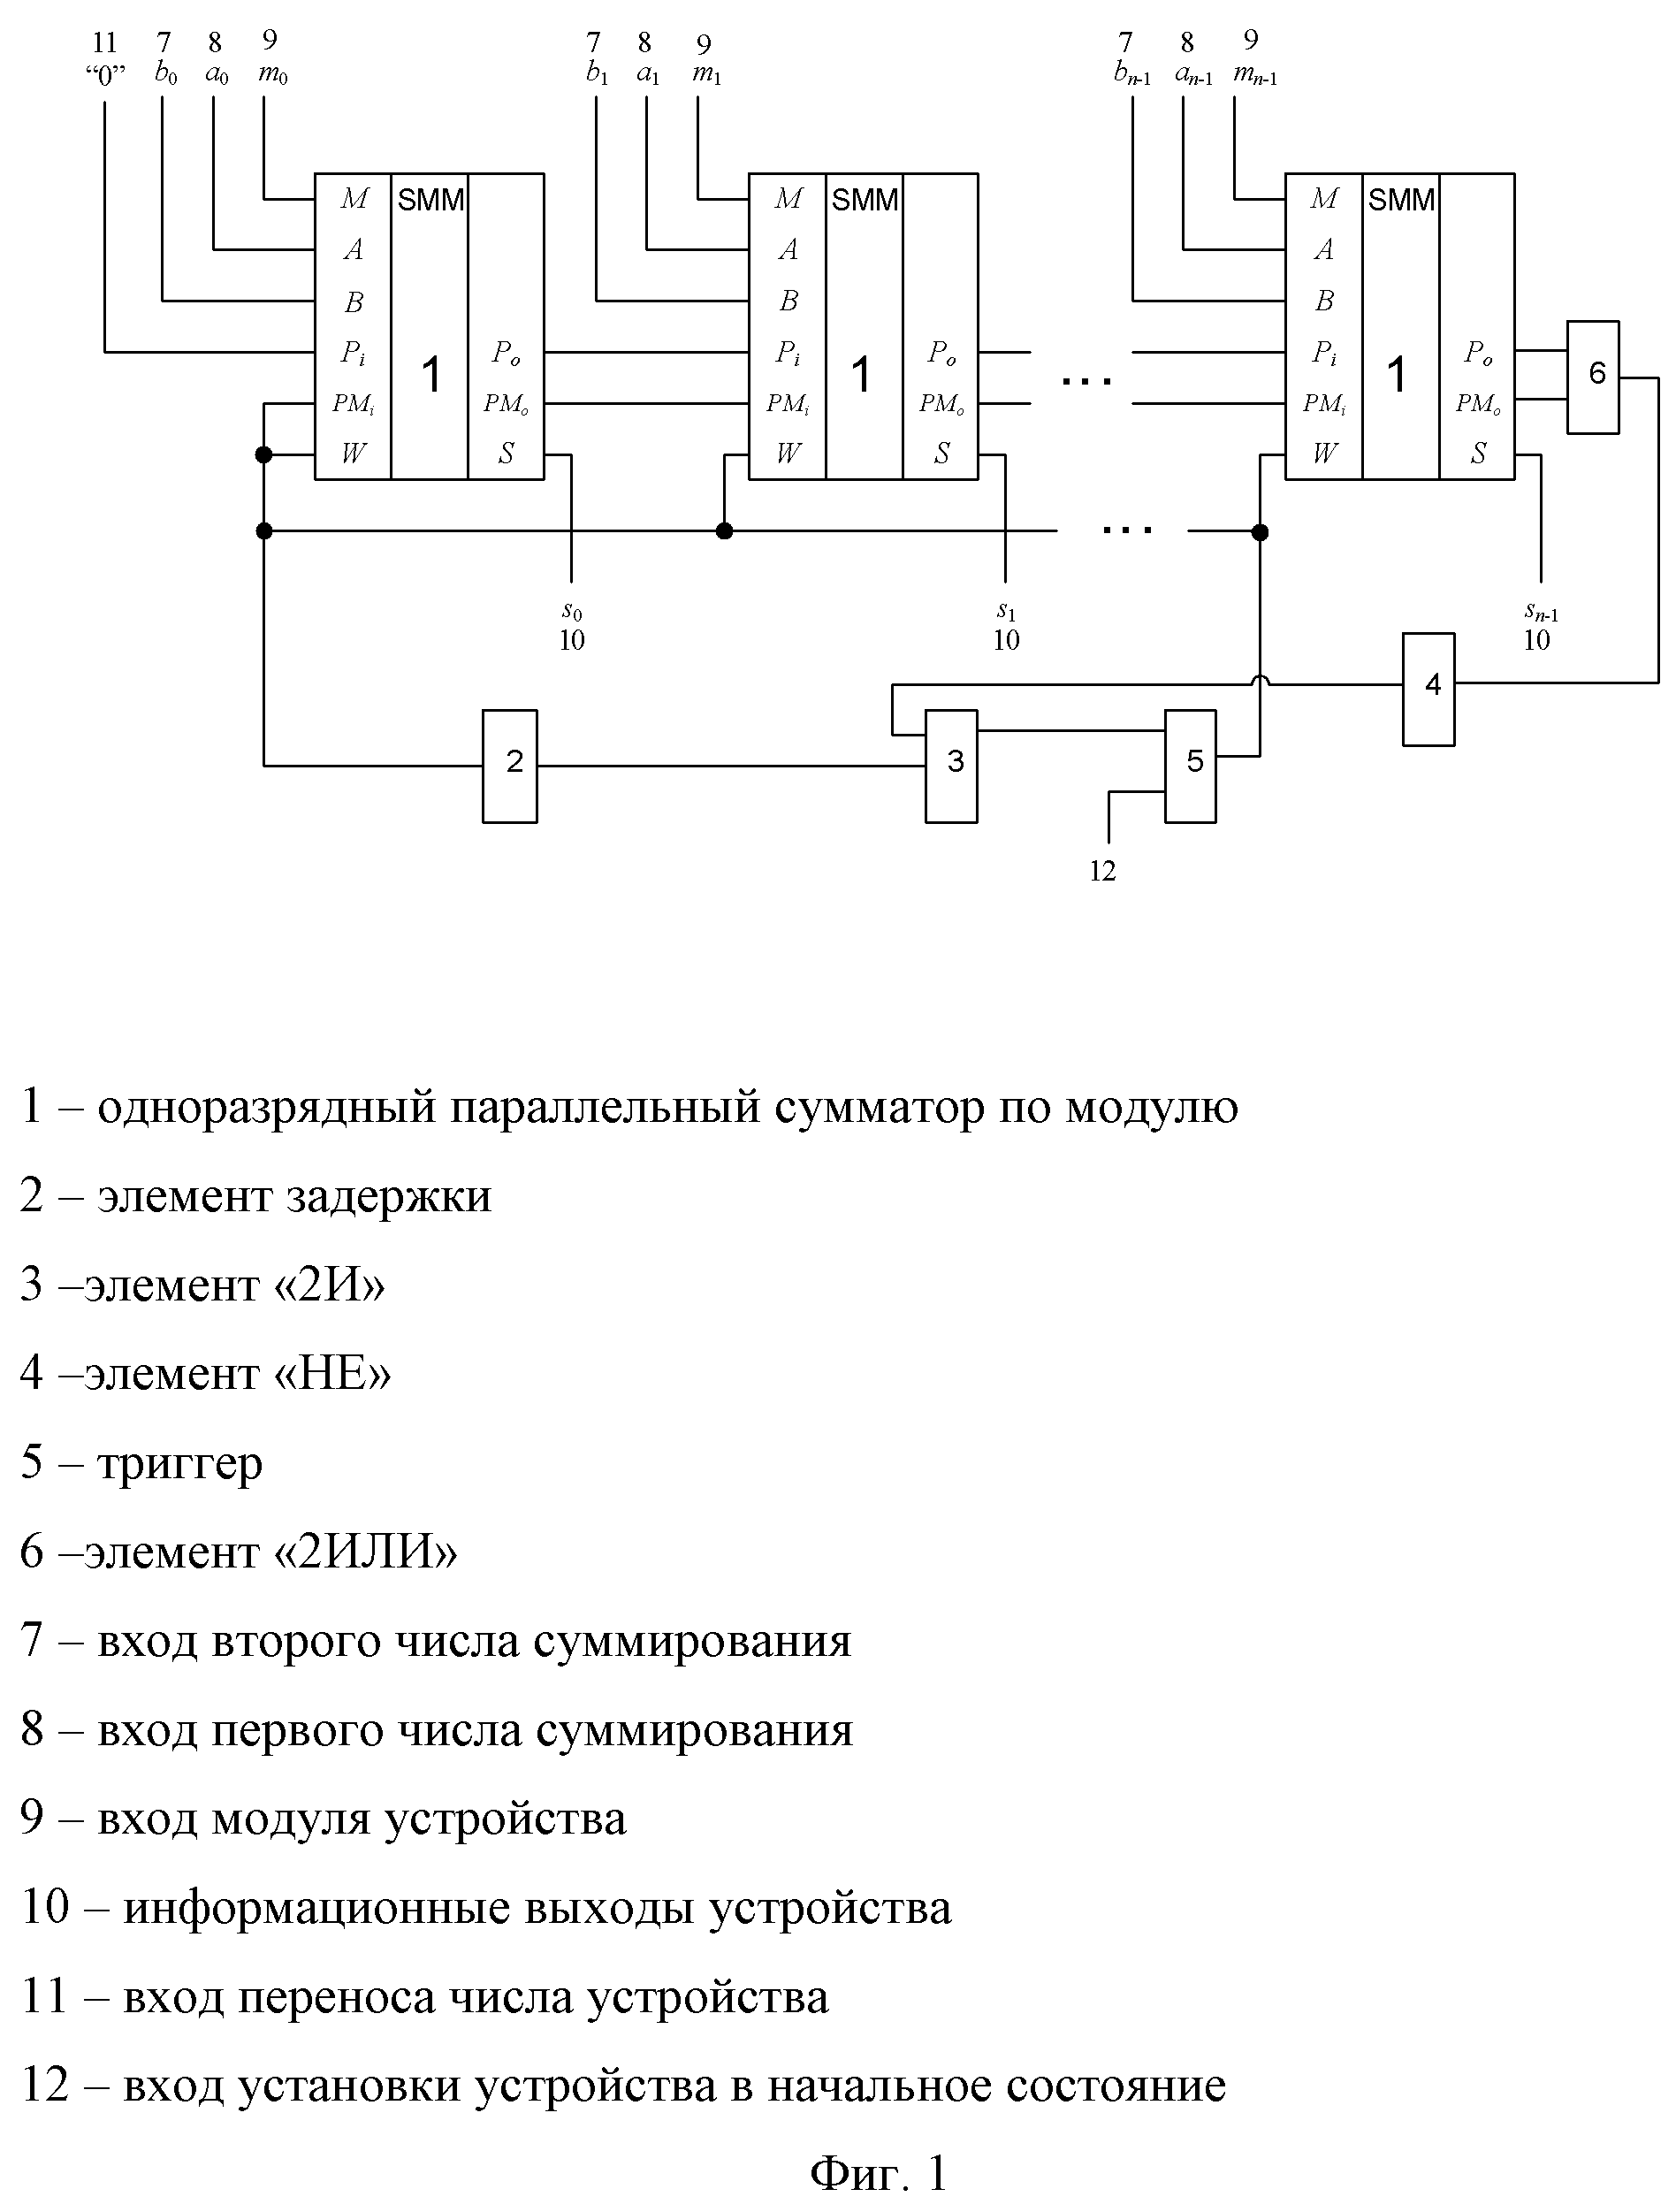 Многоразрядный параллельный сумматор по модулю с последовательным переносом